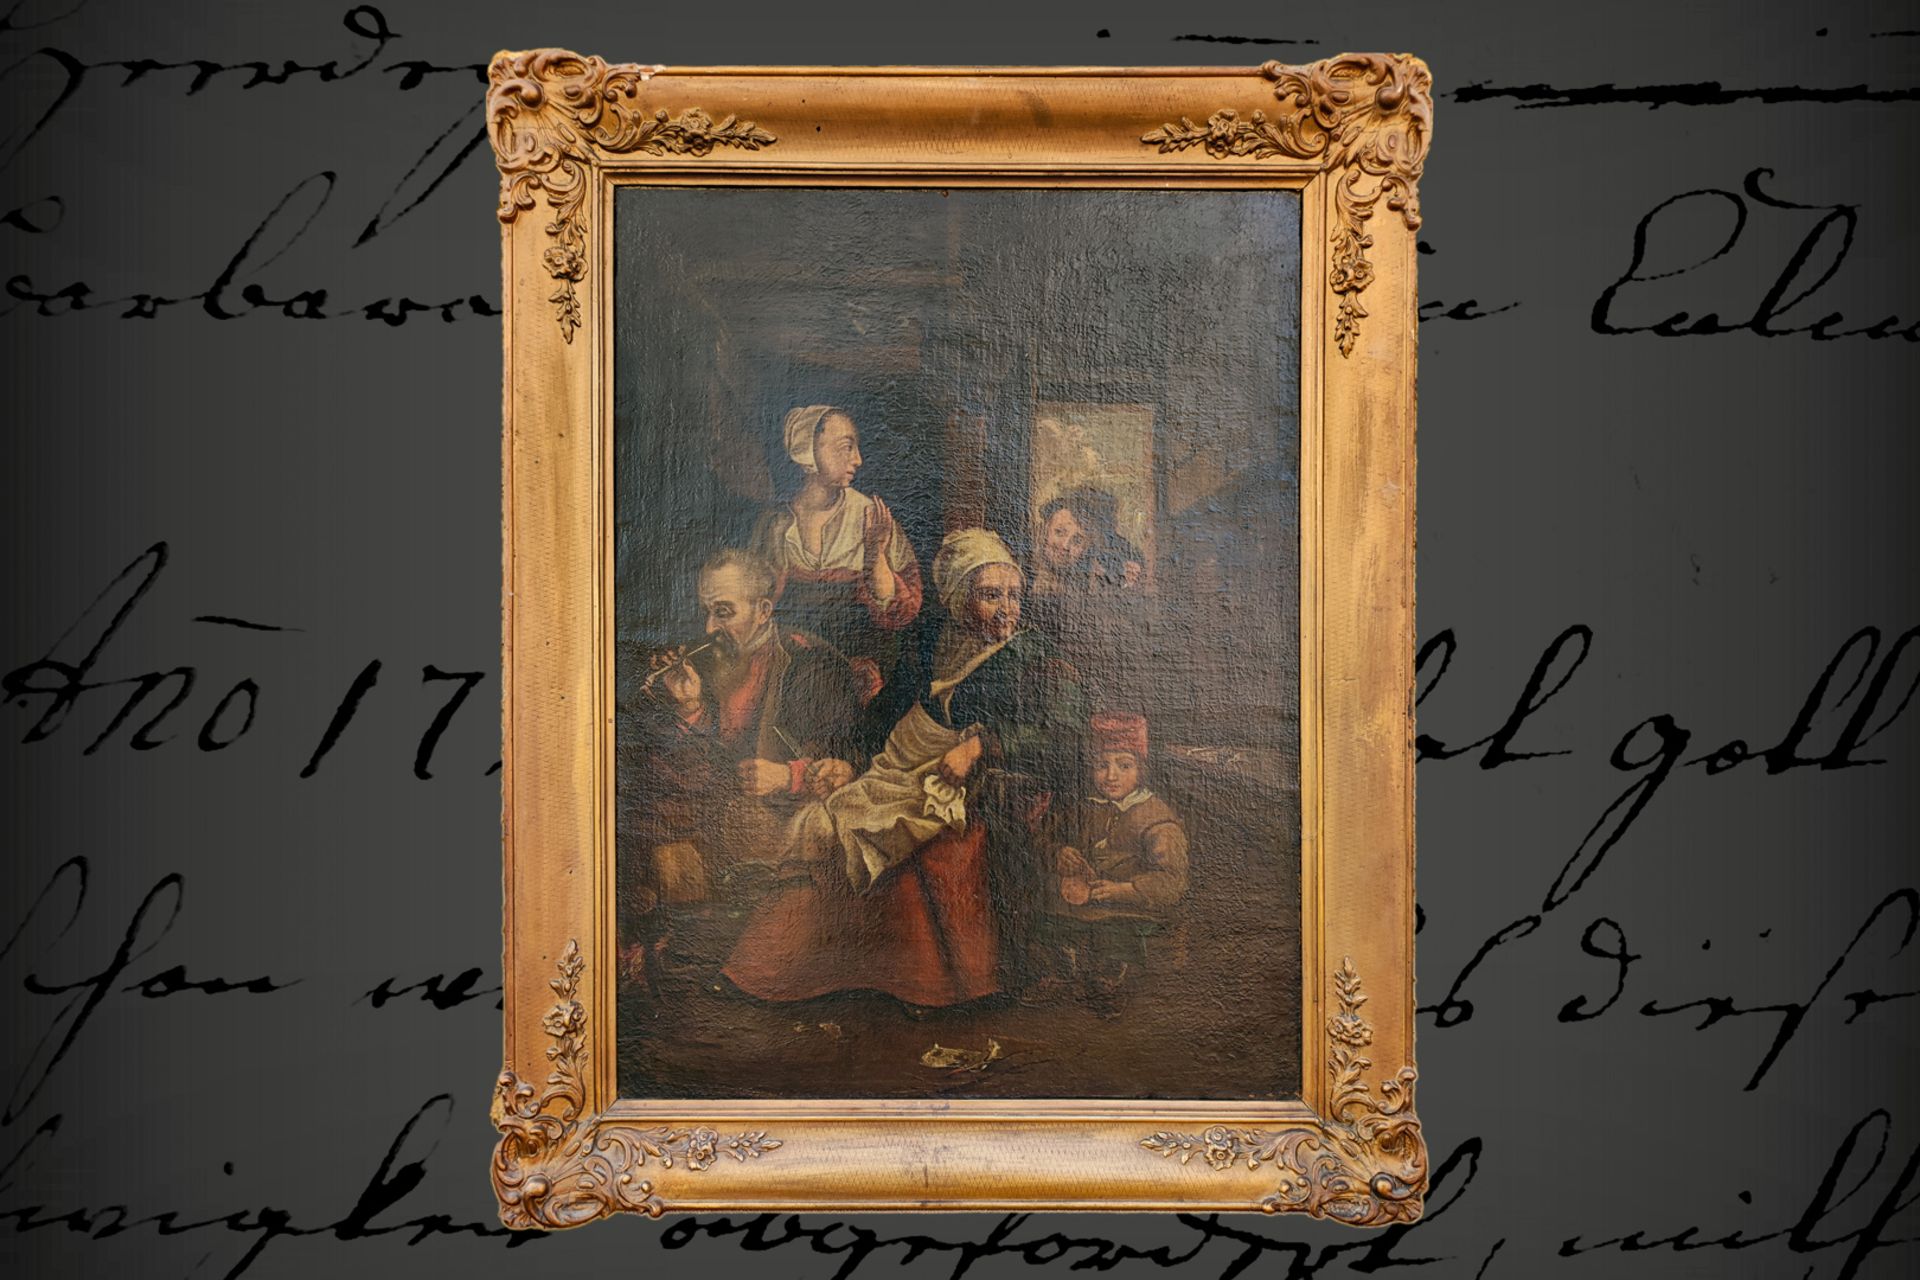 Genrebild, Öl auf Leinwand, um 1800, in der Küche am Kamin, mit 5 Personen, in goldenem Stuckrahmen,